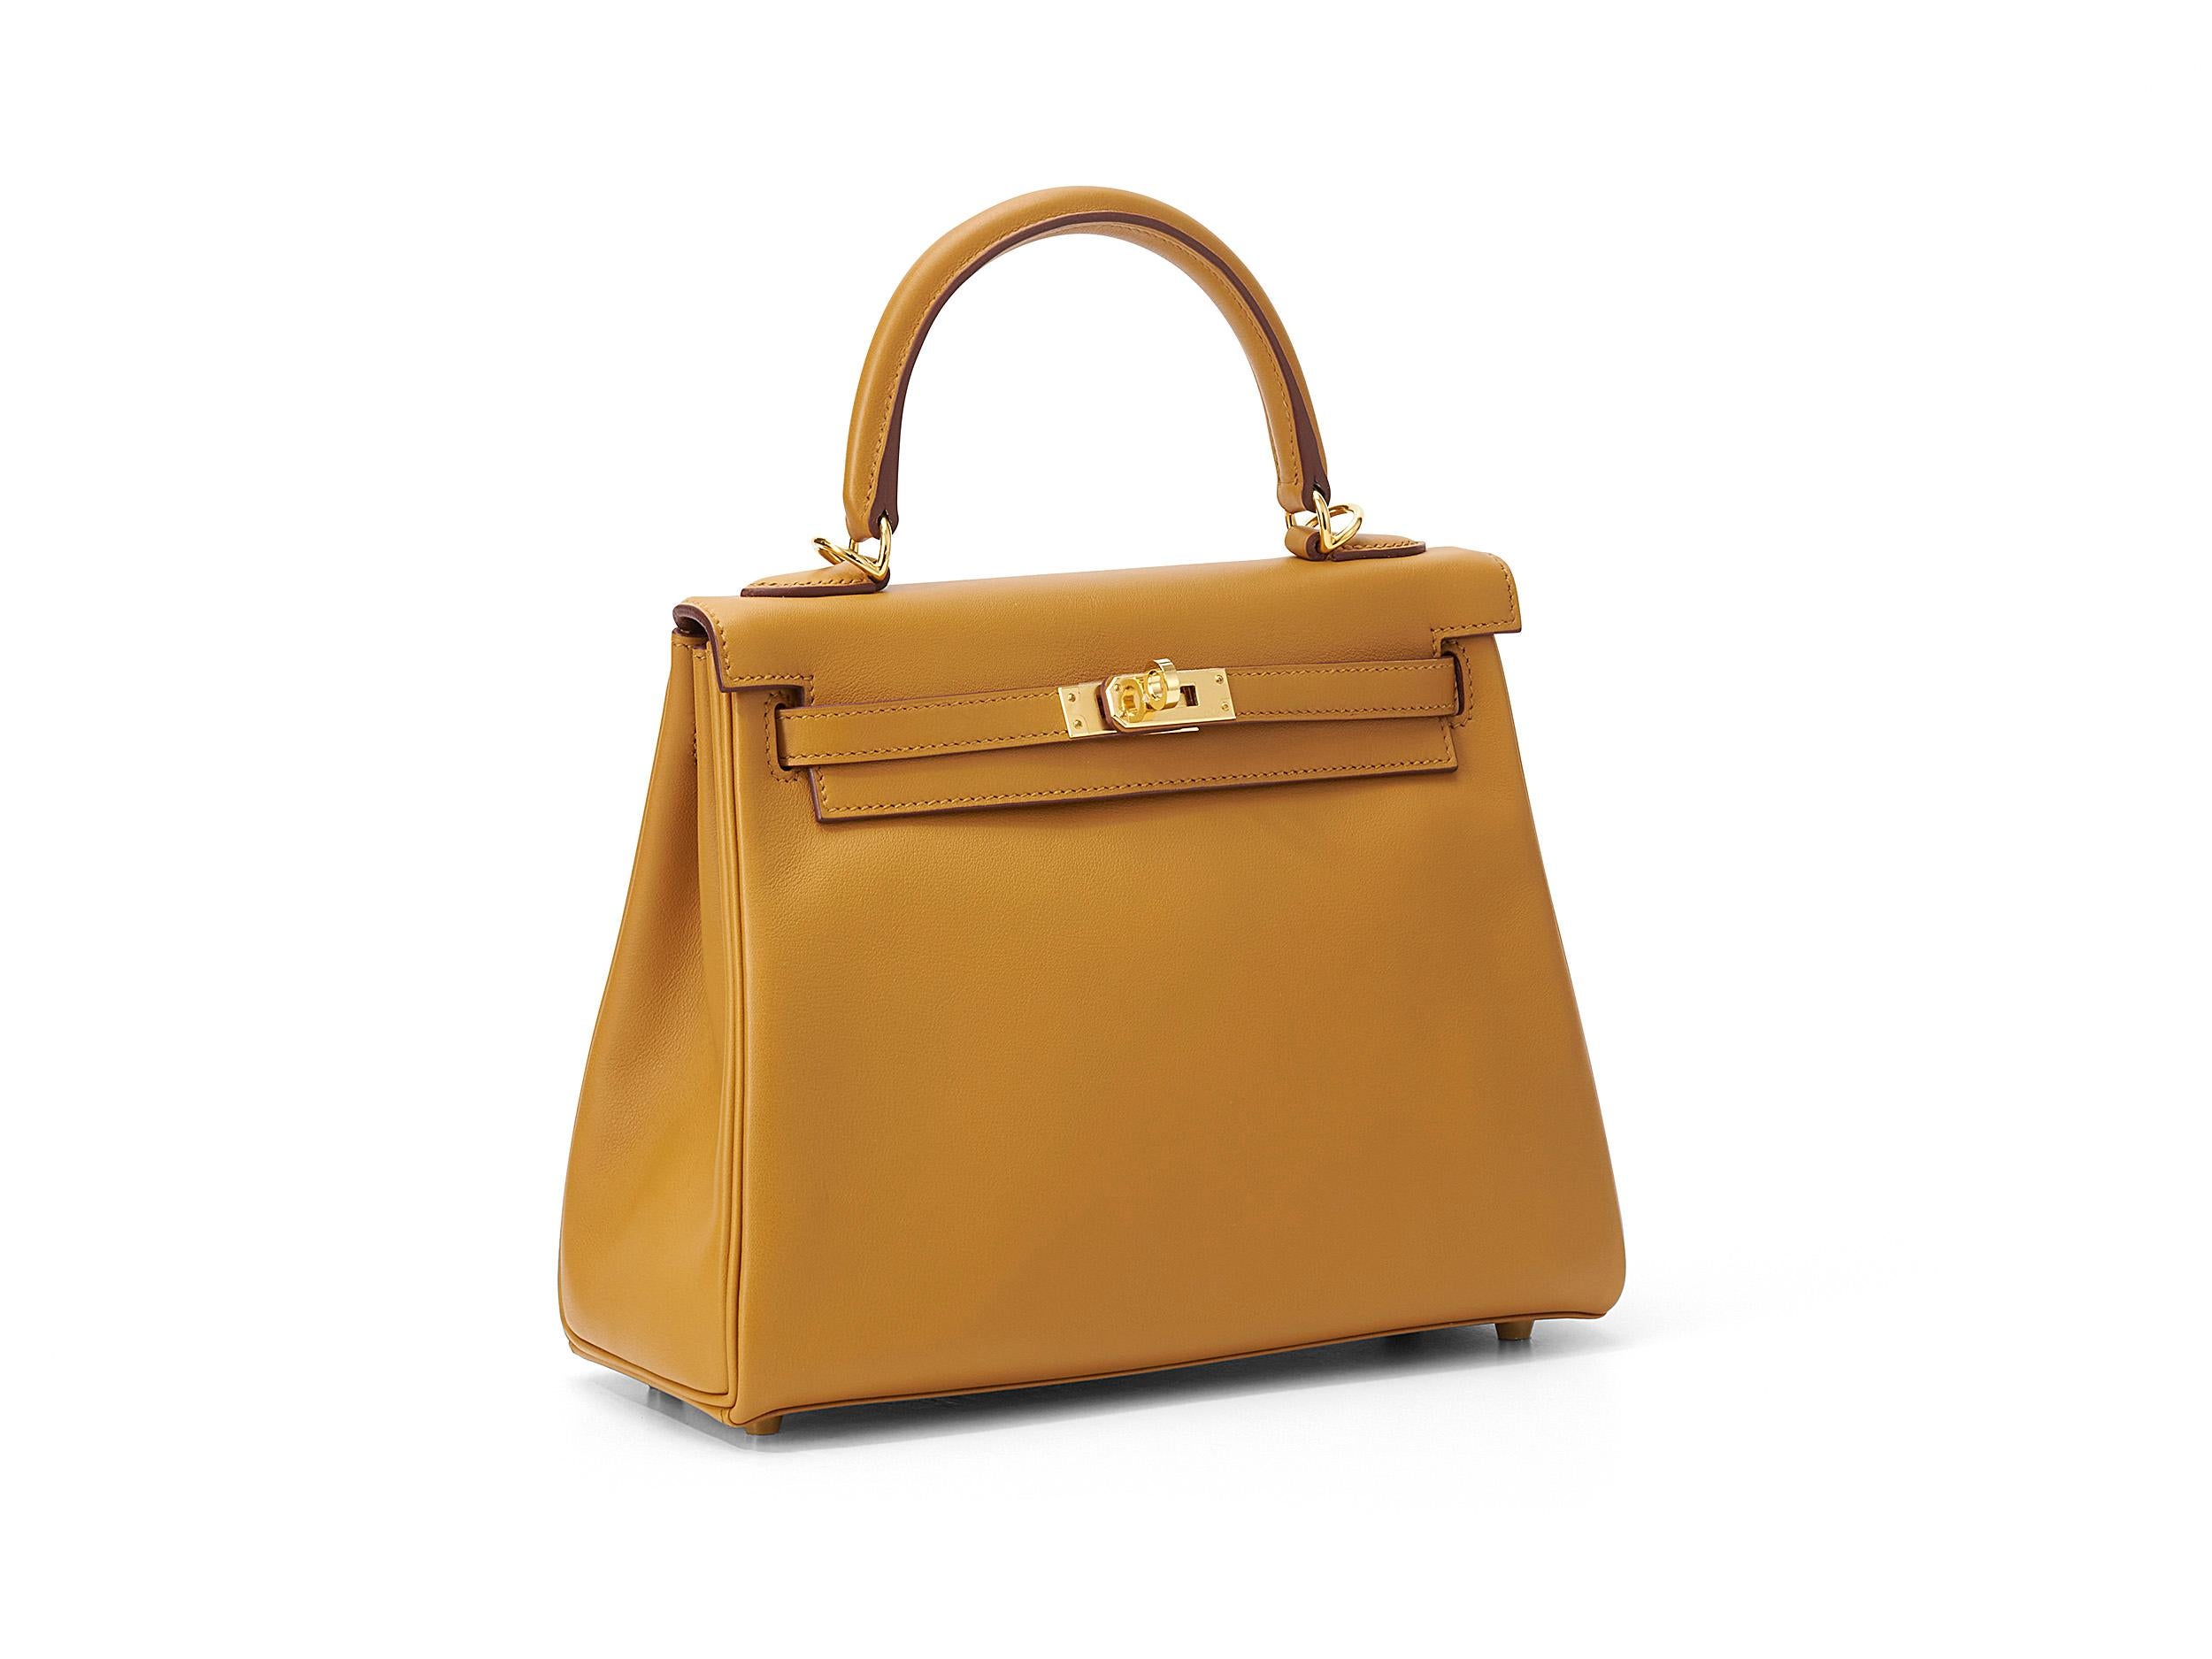 Hermès Kelly 25 en cuir de sésame et de martinet avec ferrures dorées. Le sac n'a pas été porté et est livré dans son intégralité, avec le reçu original.

Timbre Y (2020) 

